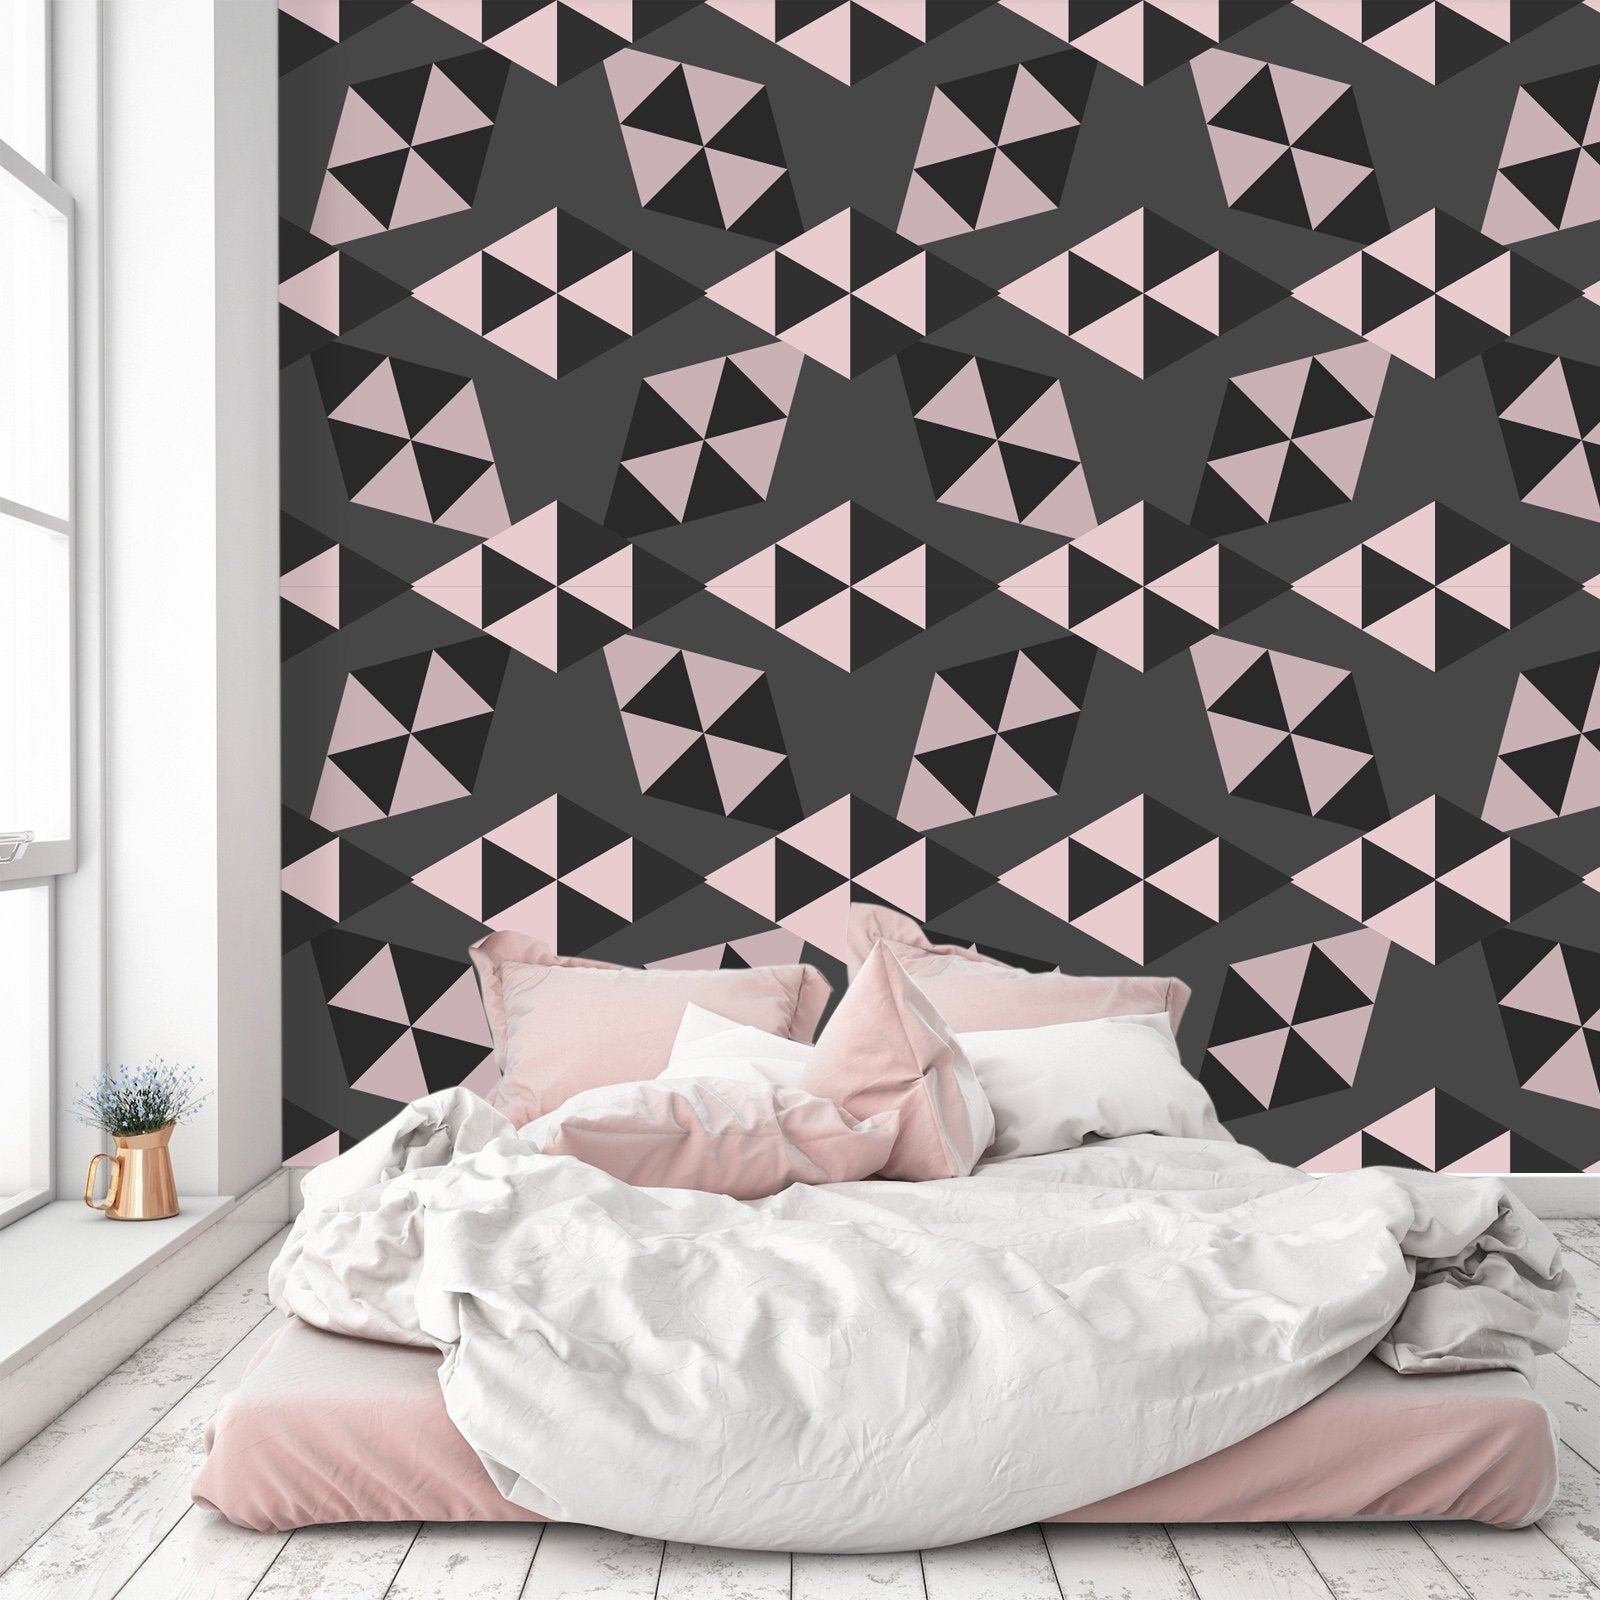 3D Black Diamond 536 Wallpaper AJ Wallpaper 